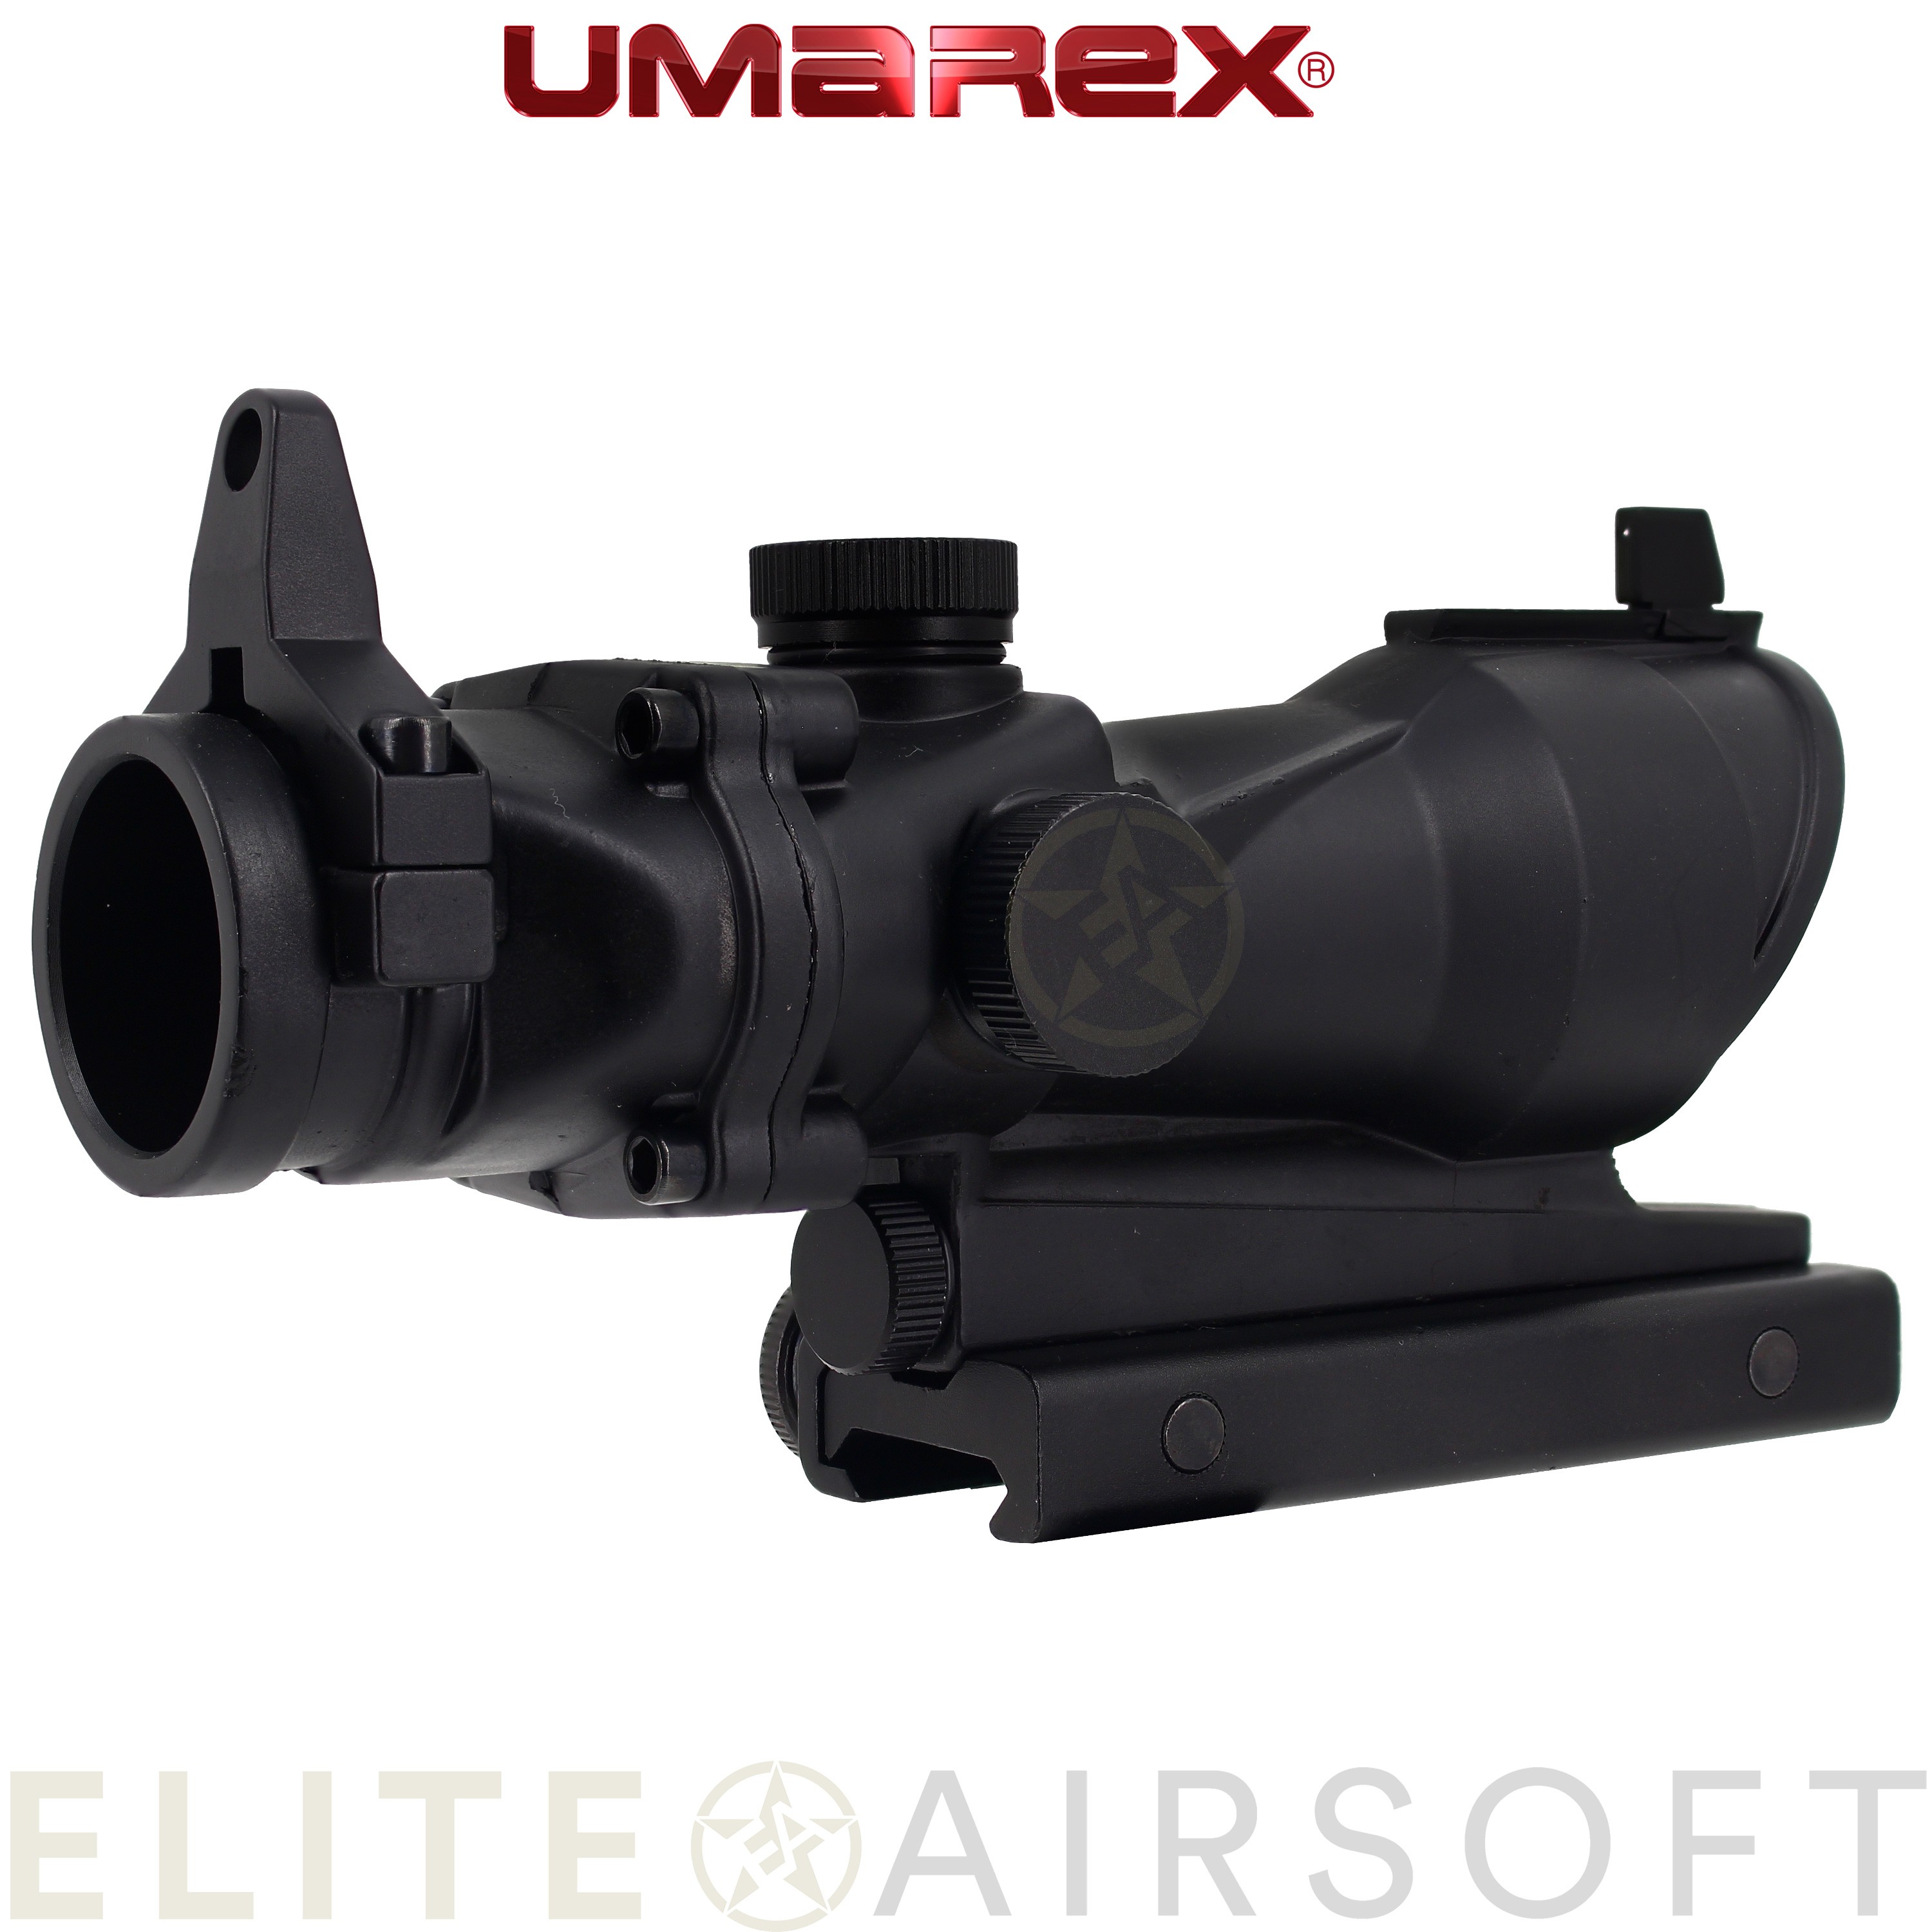 Umarex - Viseur point rouge Nano Point 4 type ACOG - Noir - Elite